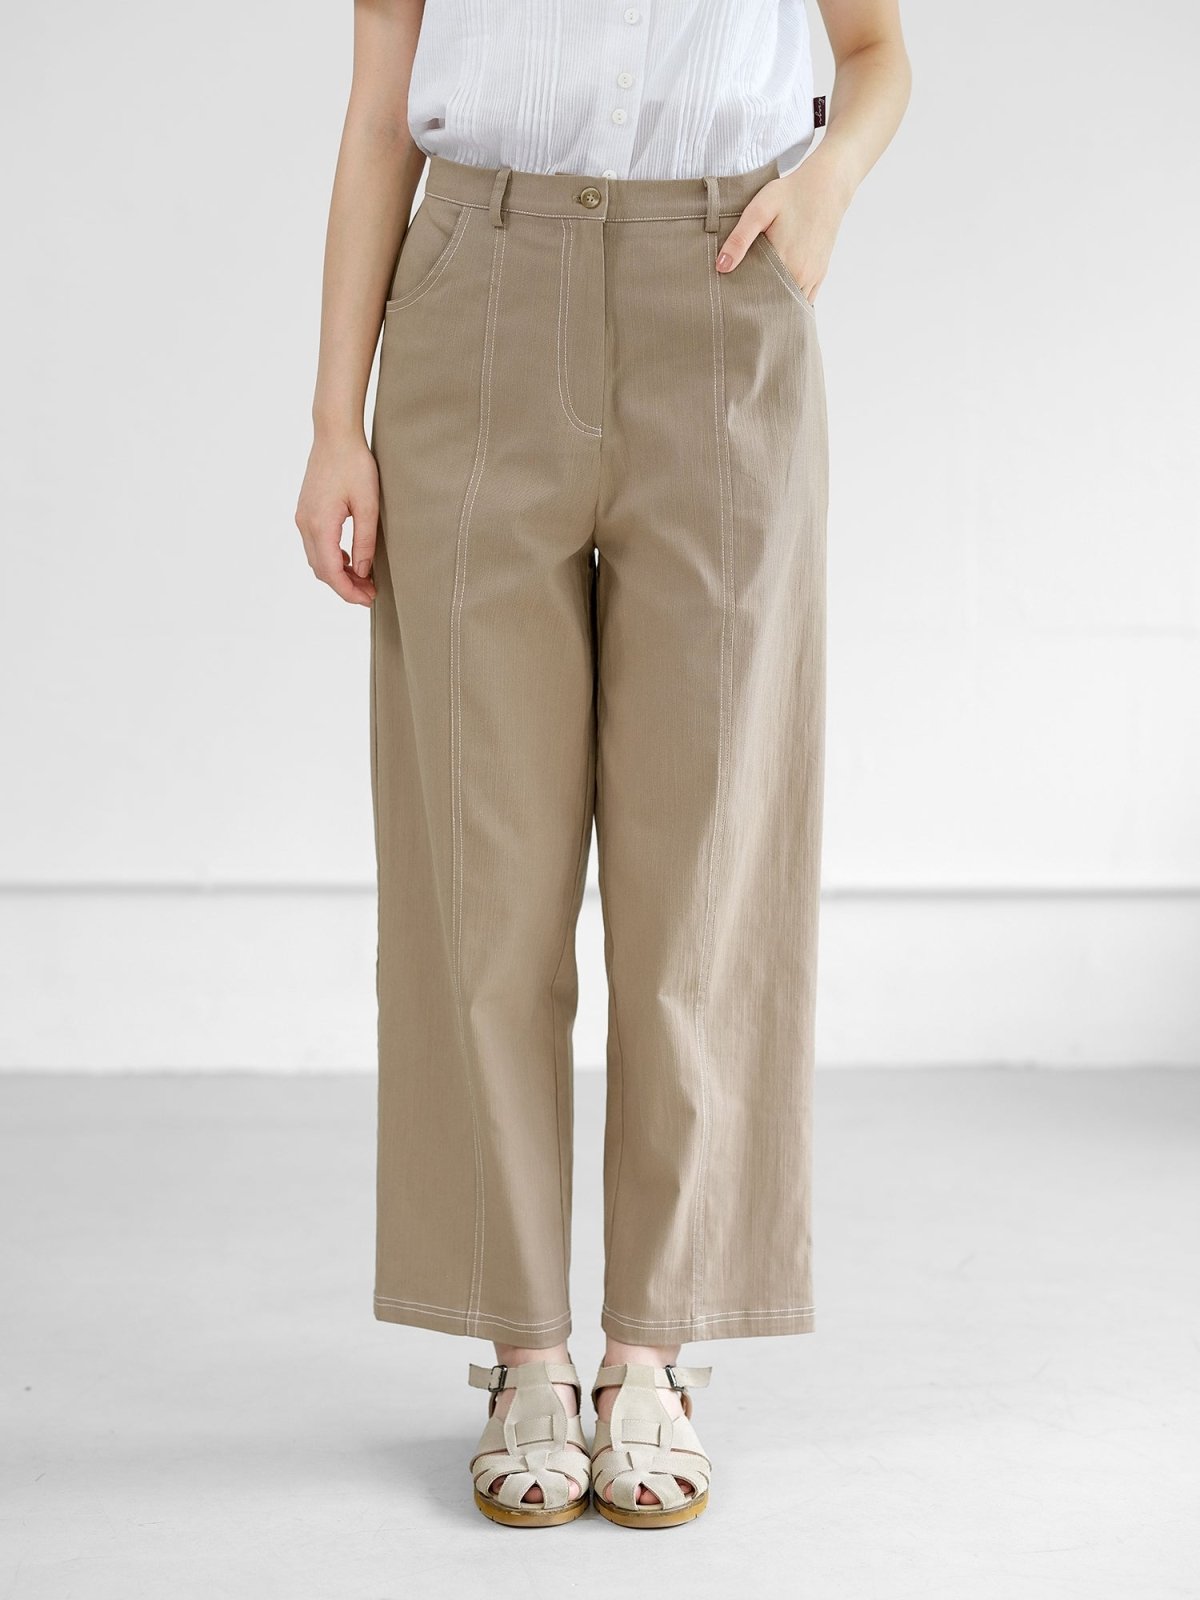 Marian Contrast Stitch Trousers - DAG-DD0721-23KhakiBeigeS - Khaki Beige - S - D'ZAGE Designs